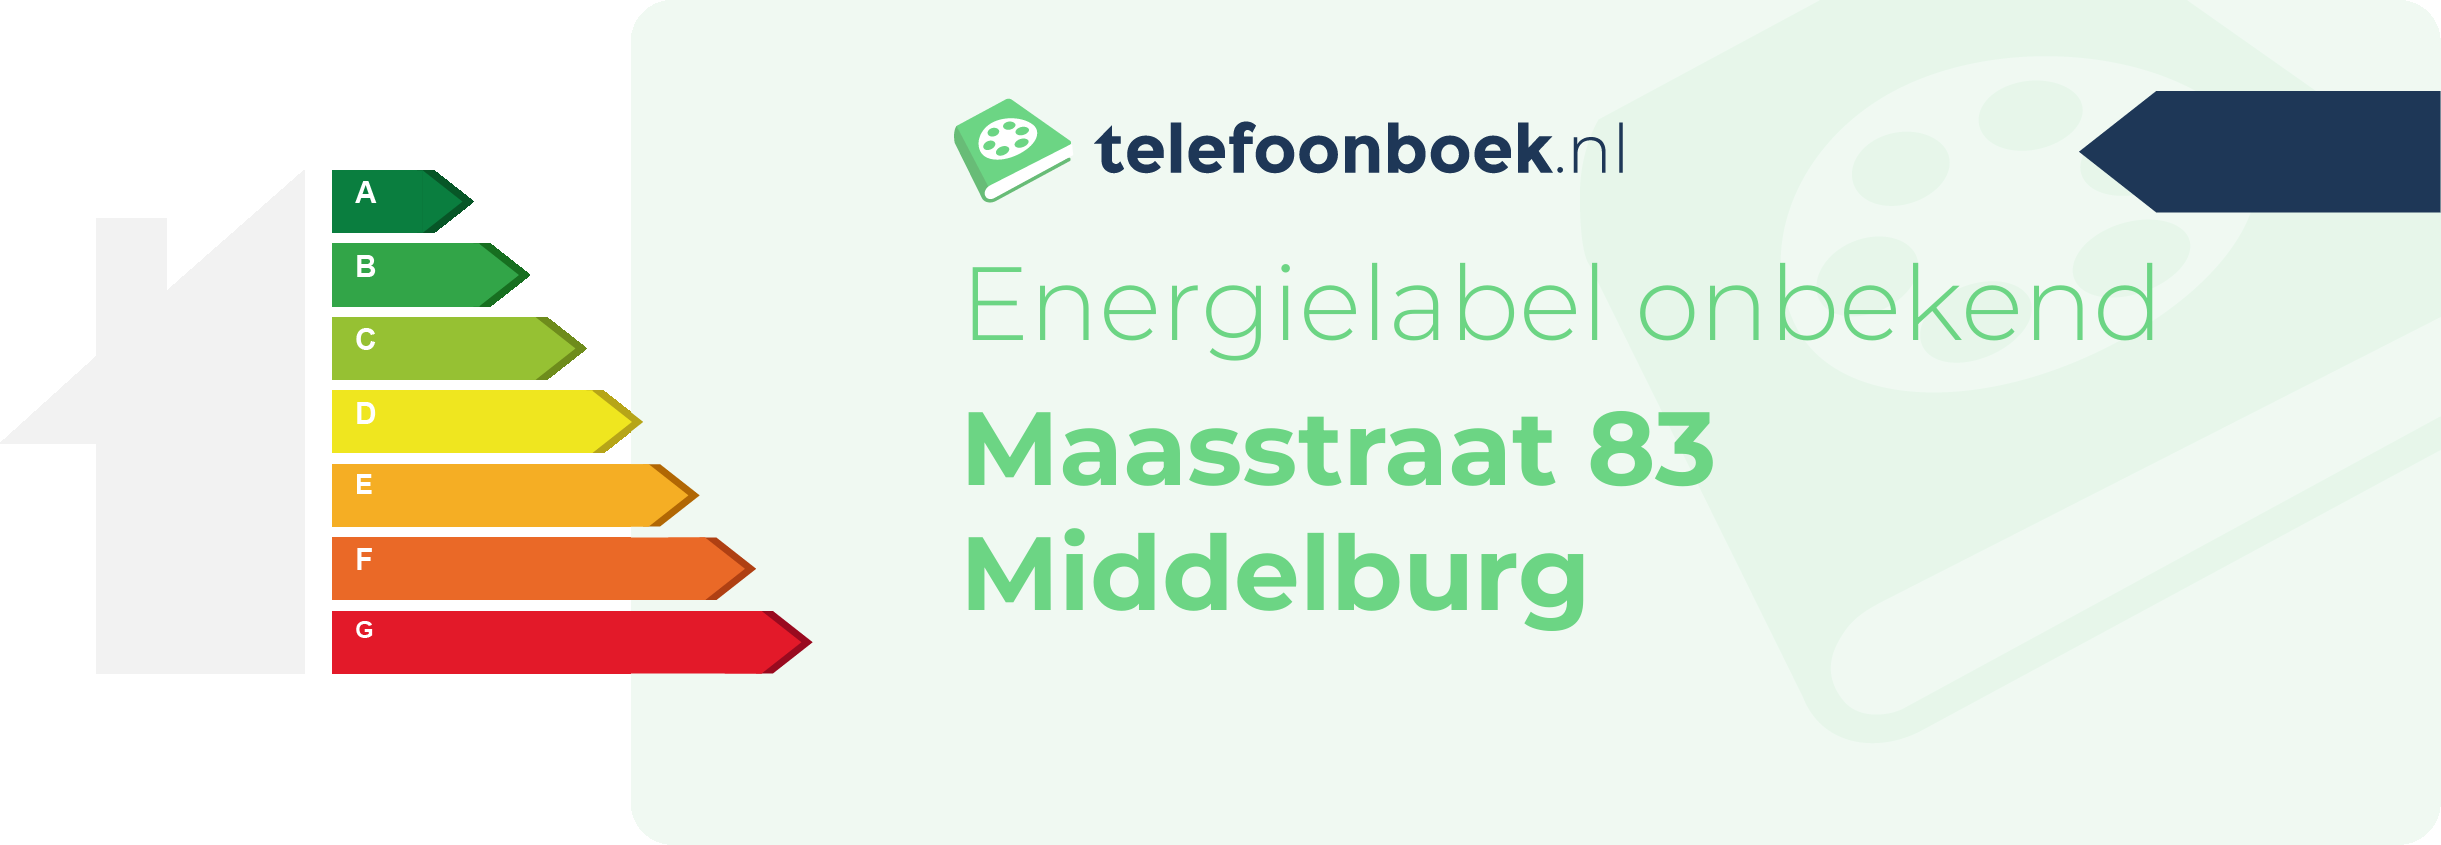 Energielabel Maasstraat 83 Middelburg